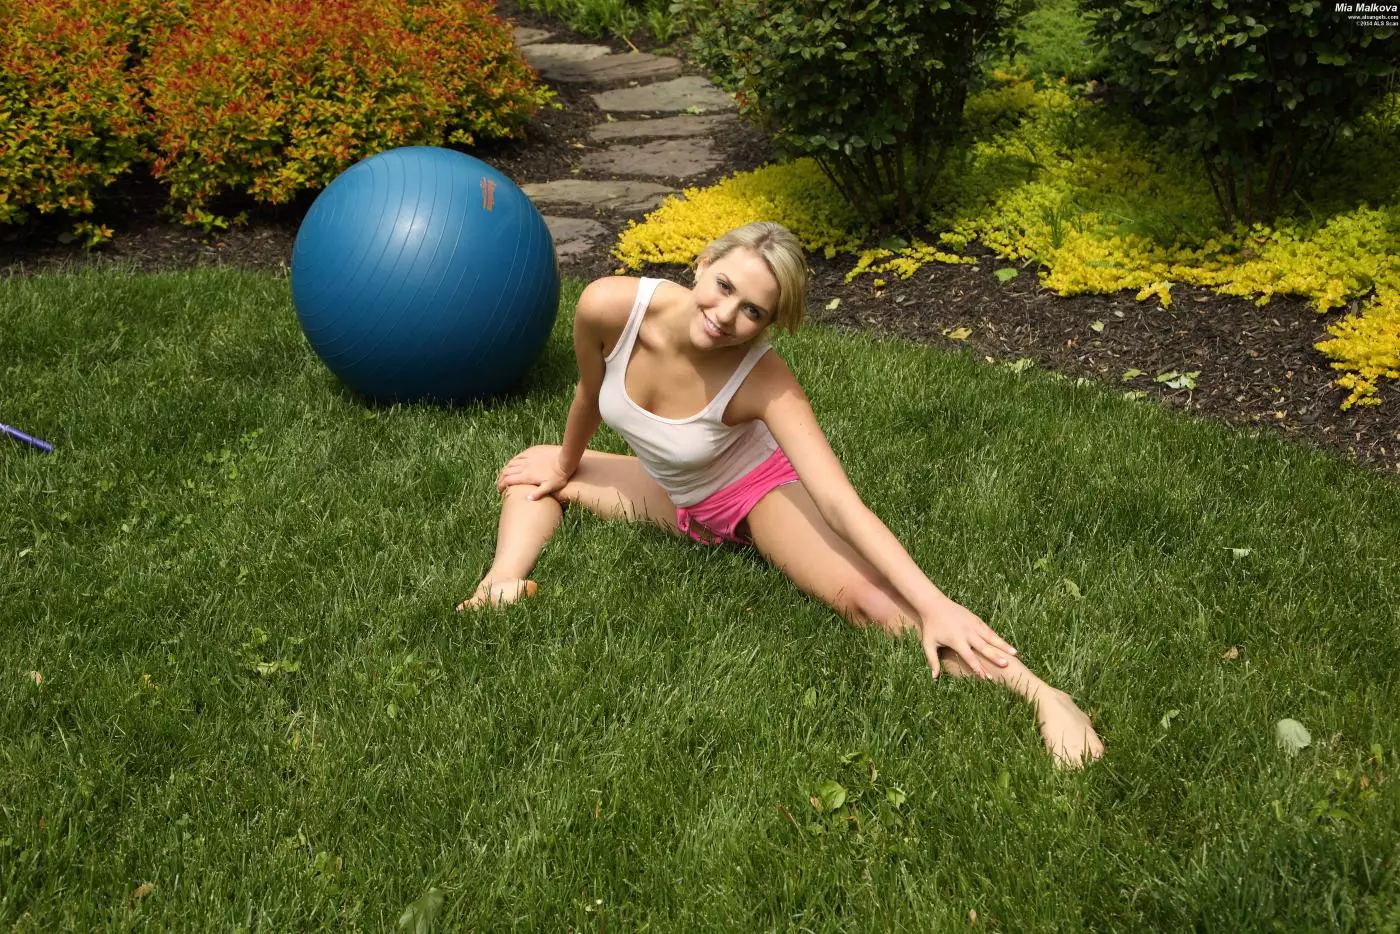 Грязная блондинка Mia Malkova раздевается и долбит свою киску игрушкой на мяче для фитнесса